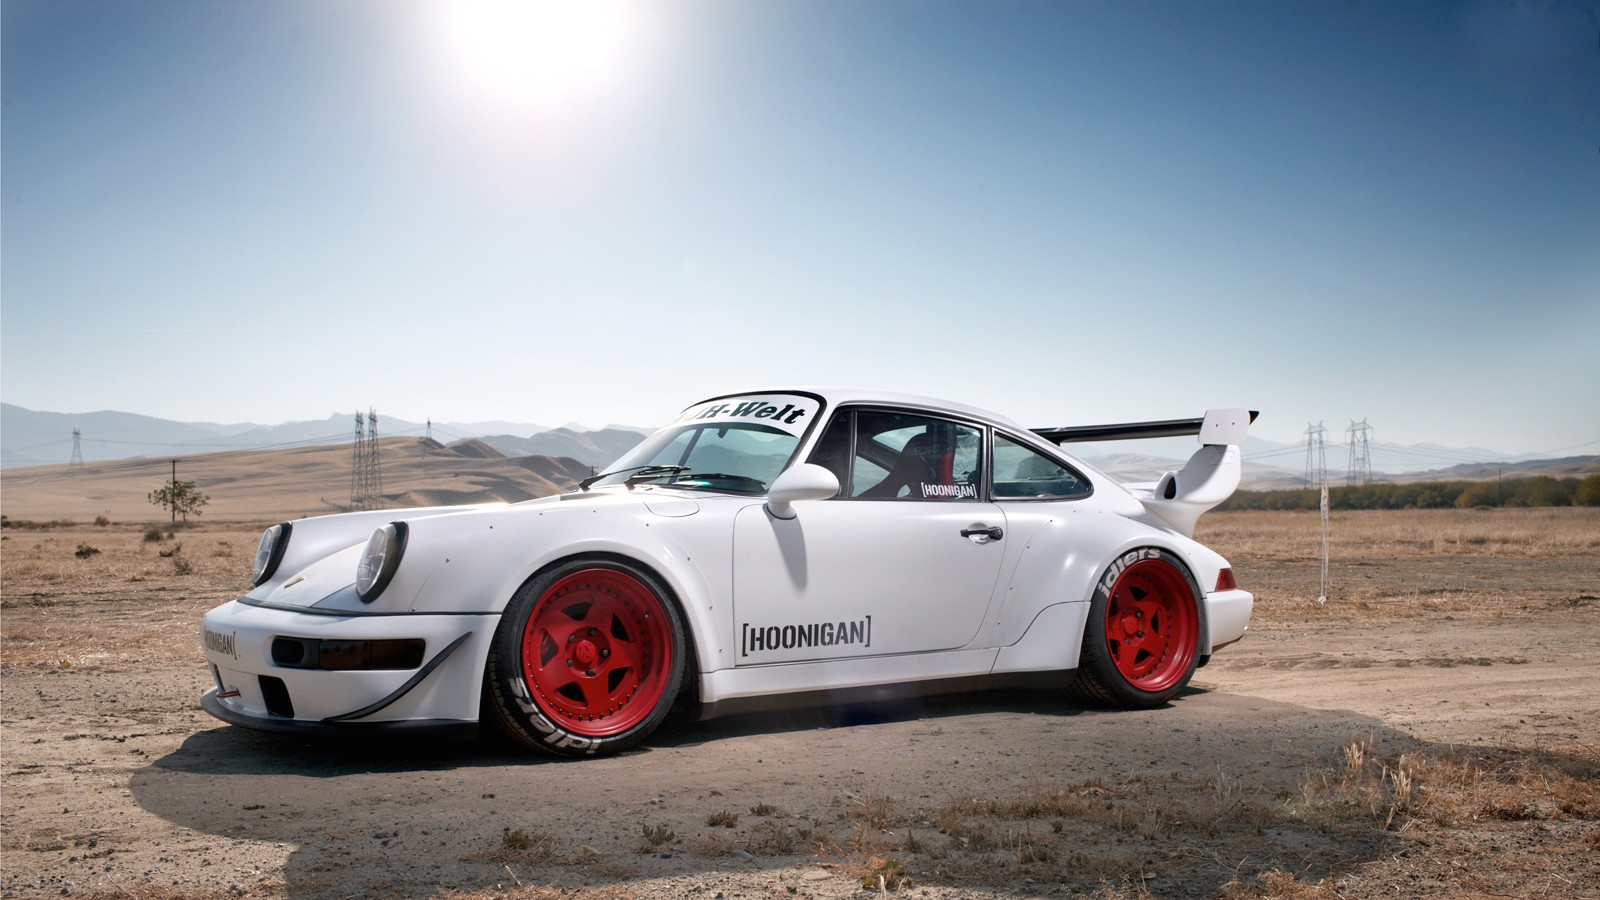 Rwb - Porsche 911 Rauh Welt , HD Wallpaper & Backgrounds